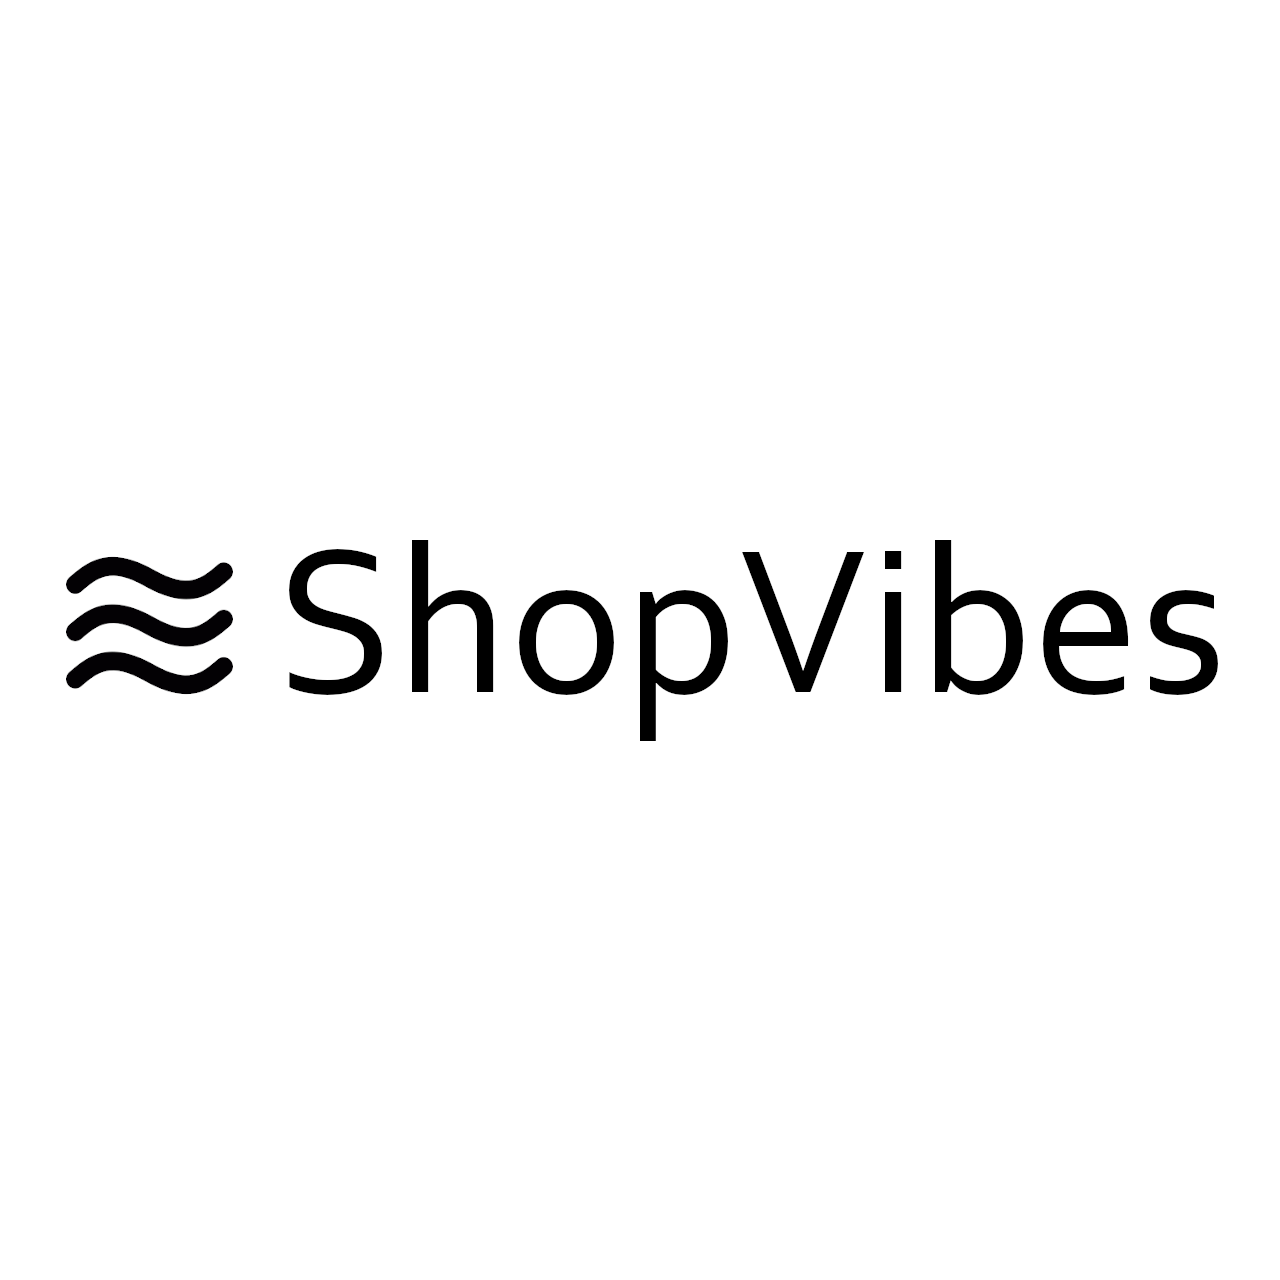 ShopVibes / startup von München / Background